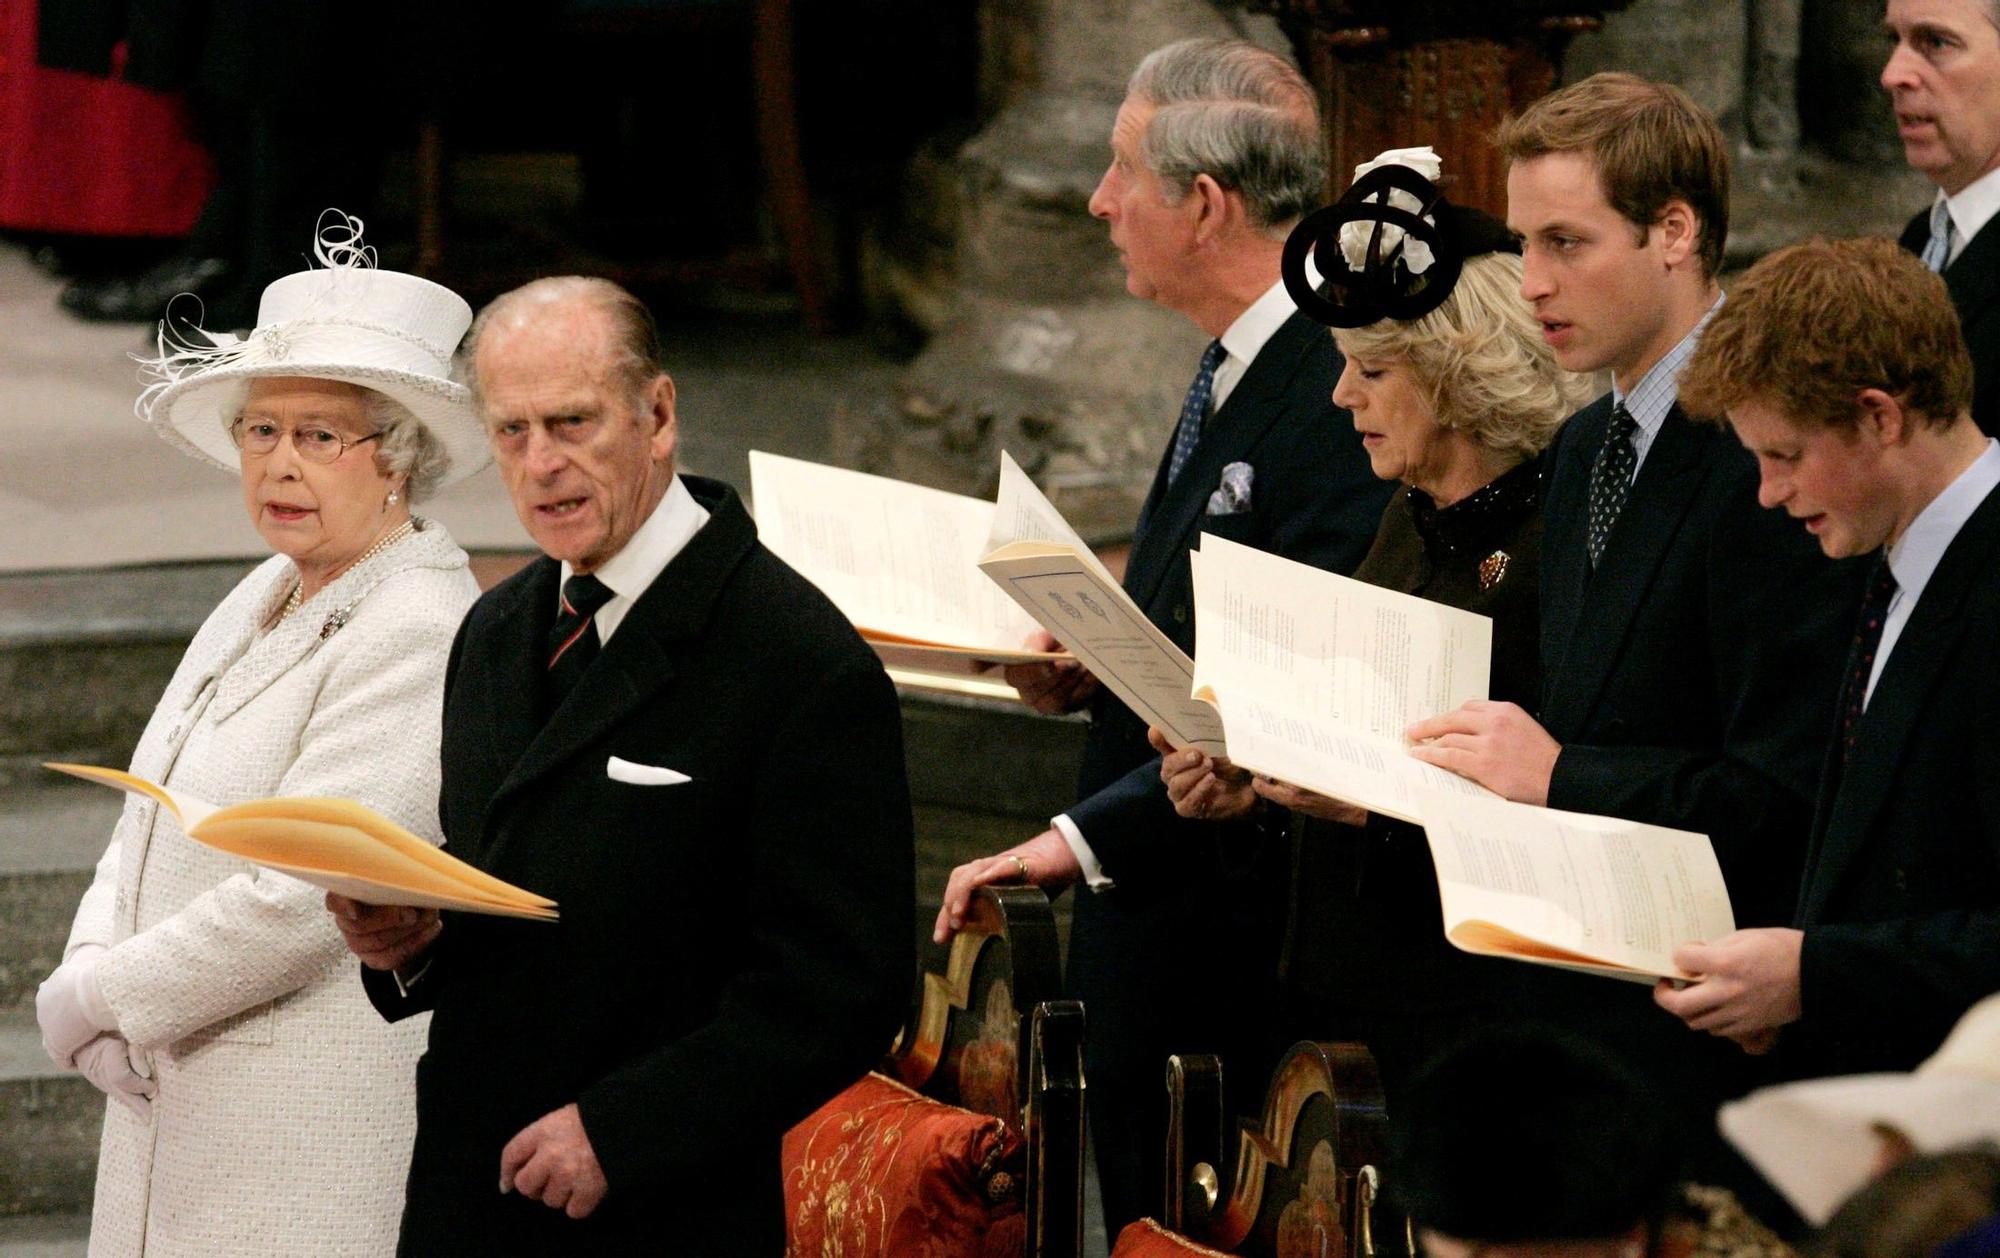 Una imagen de la familia real británica durante un acto institucional.